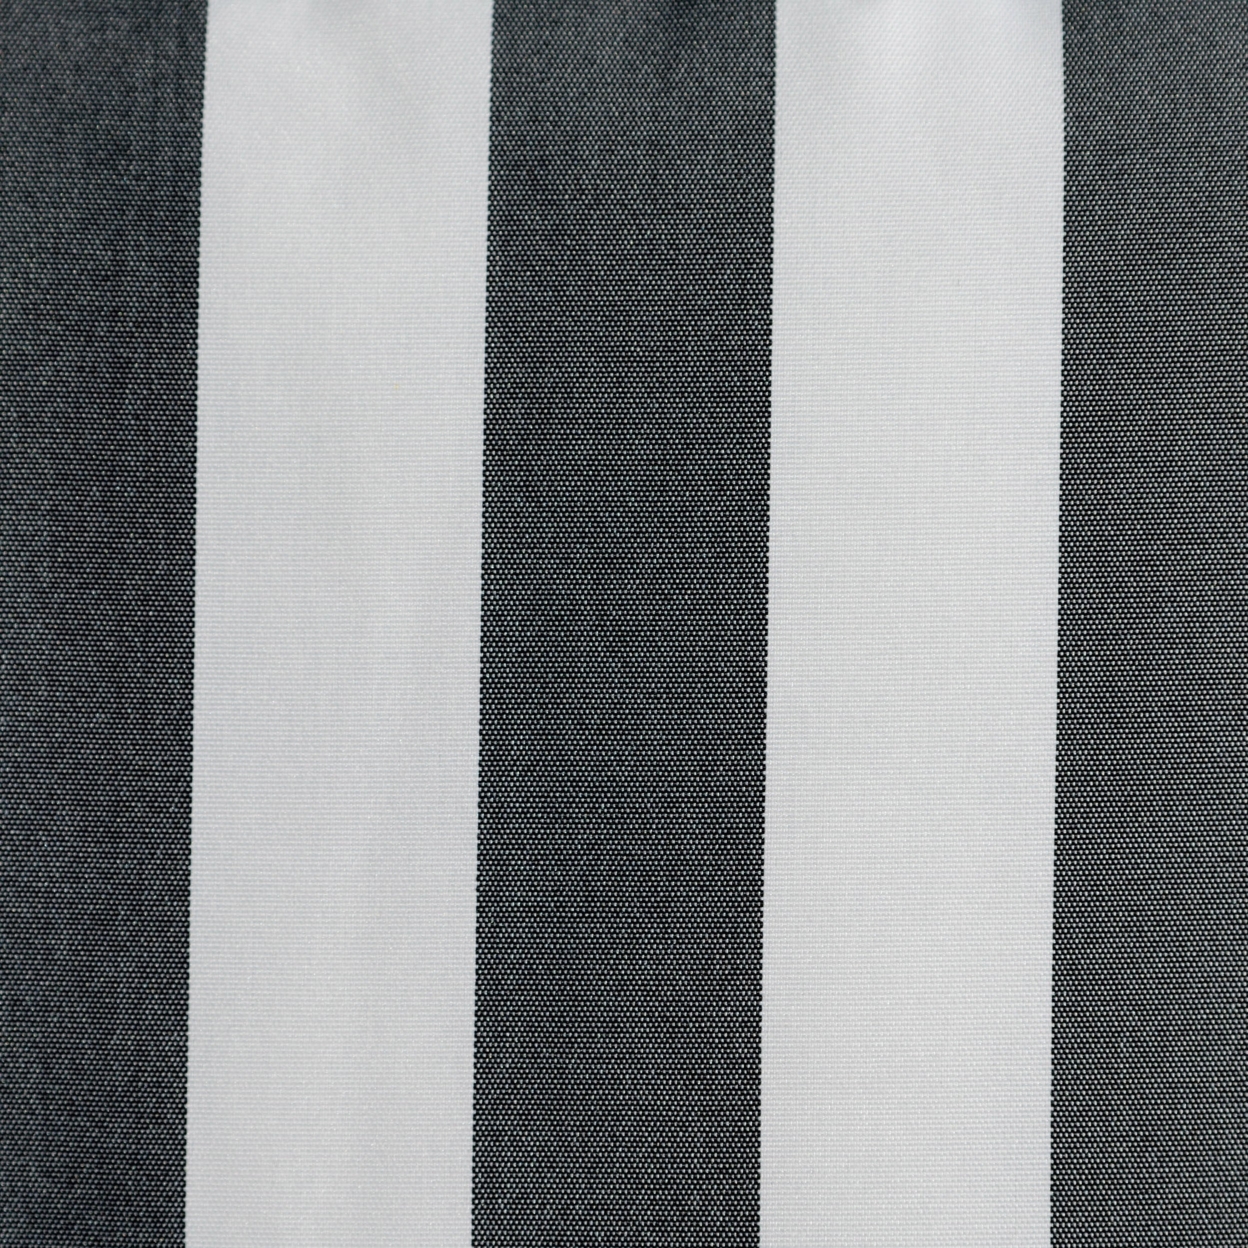 Coronado Outdoor Stripe Water Resistant Rectangular Throw Pillow - Green/white, Set Of 2